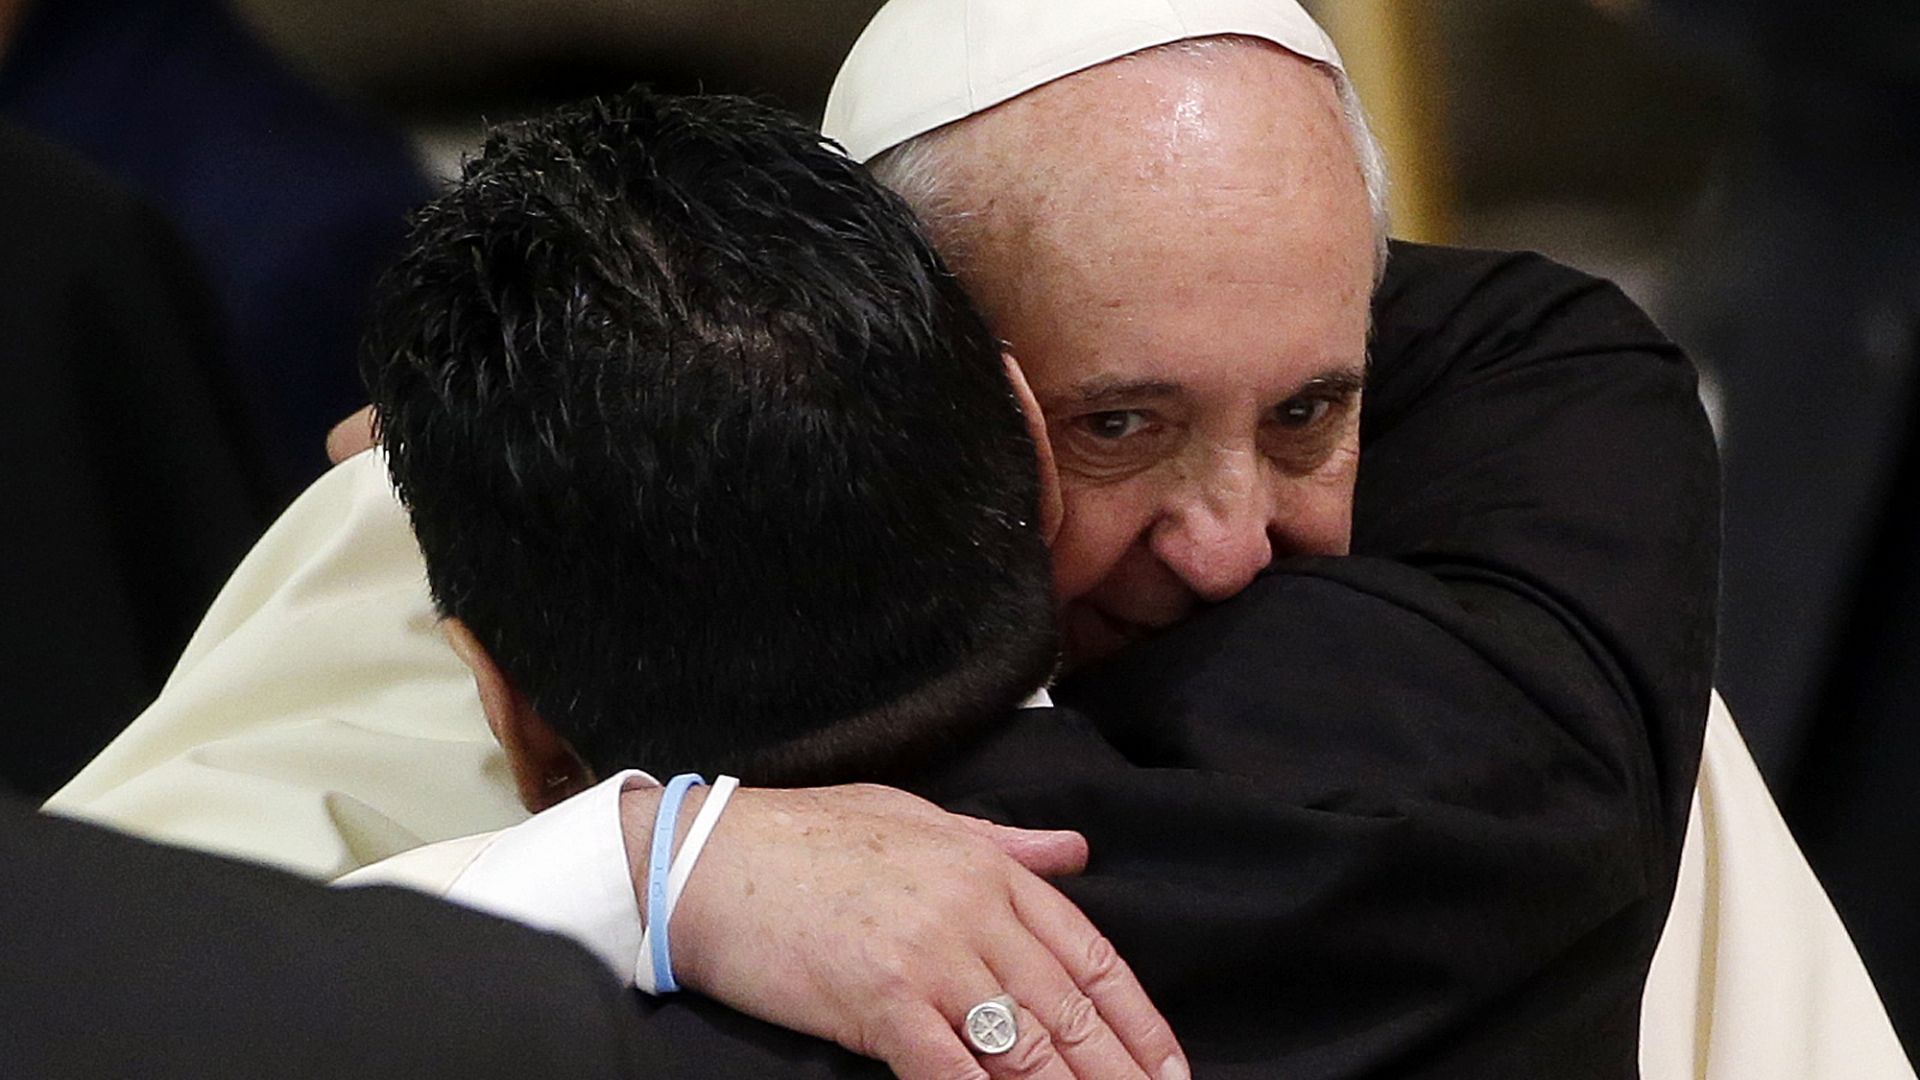 Папата е споменал Марадона в молитвите си и си спомня с умиление за срещите им